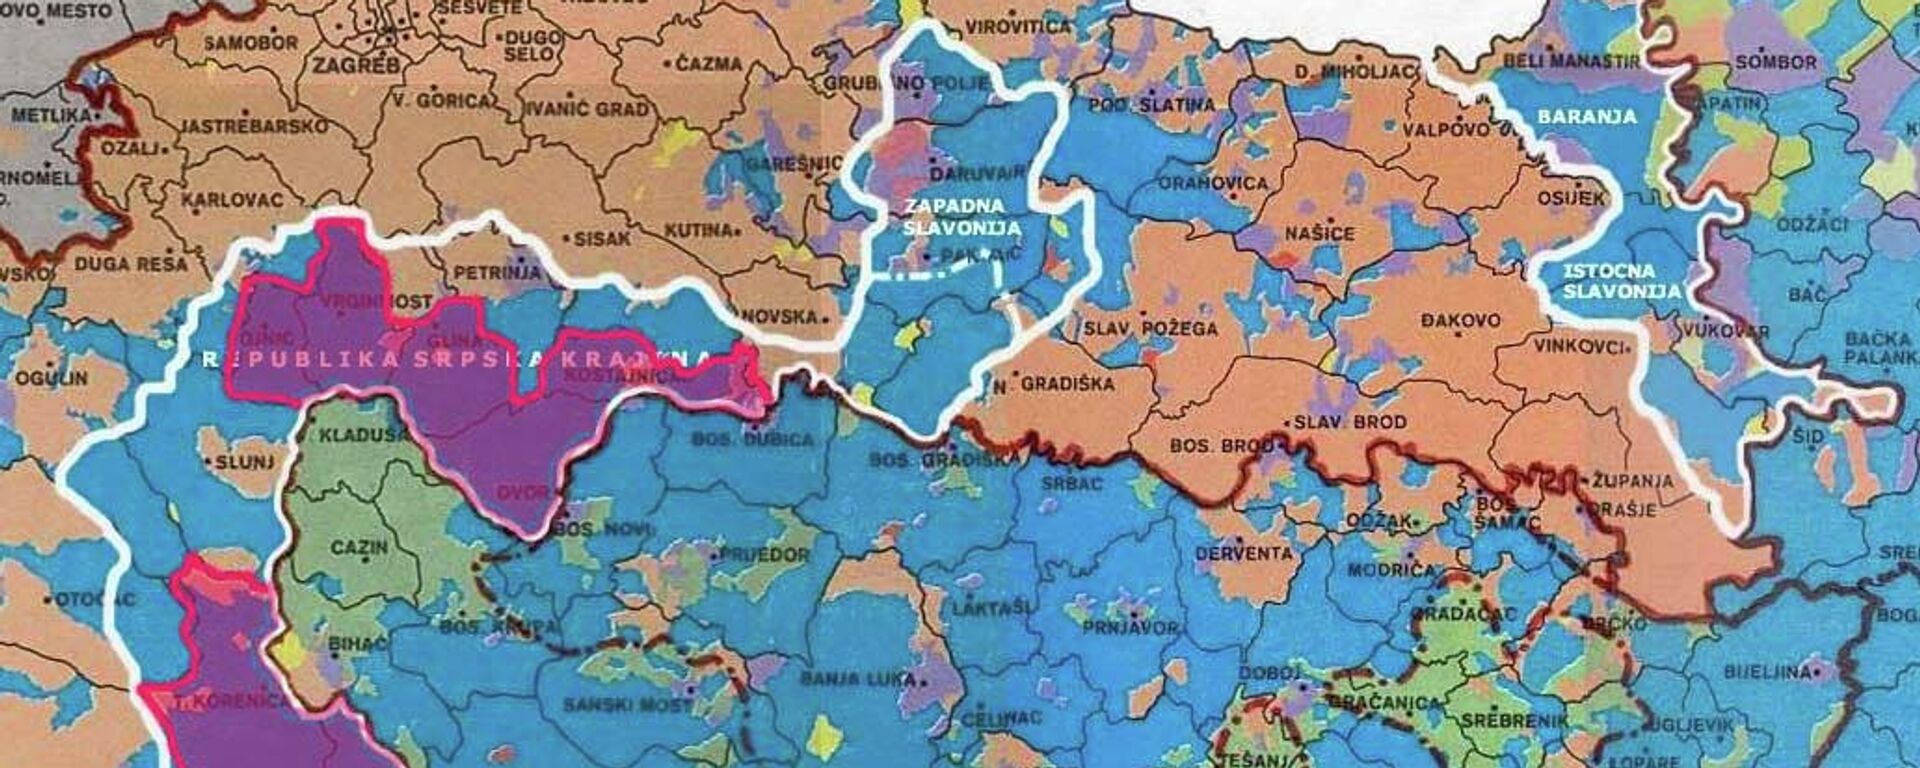 Karta Republike Srpske Krajine i Plana Z-4 - Sputnik Srbija, 1920, 25.12.2021